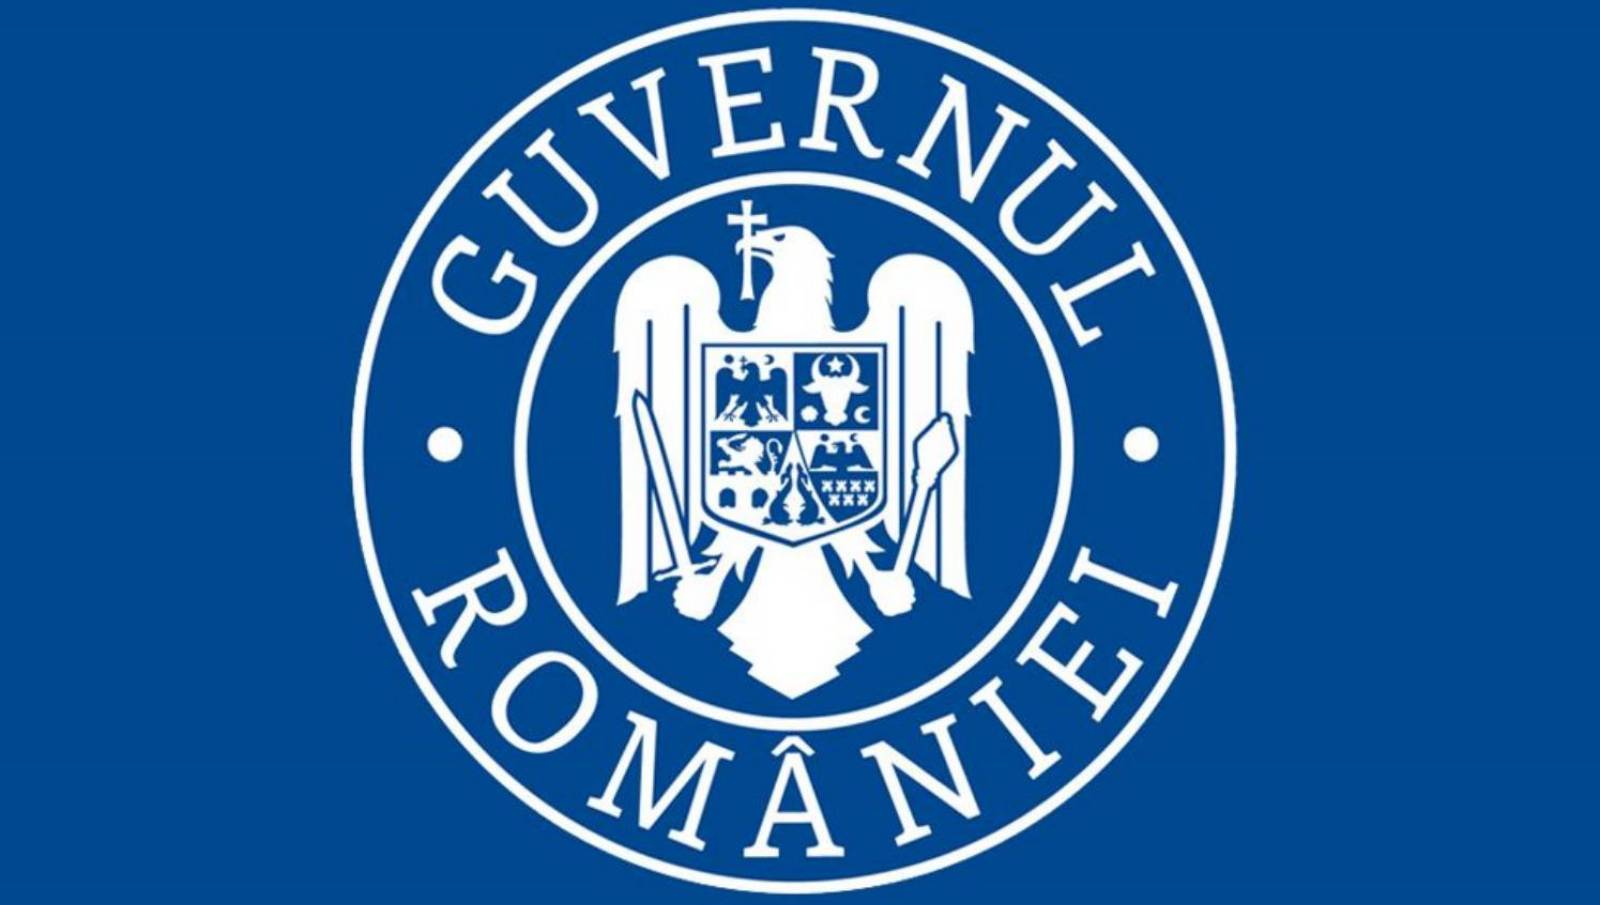 De Roemeense regering beslist over de heropening van restaurants